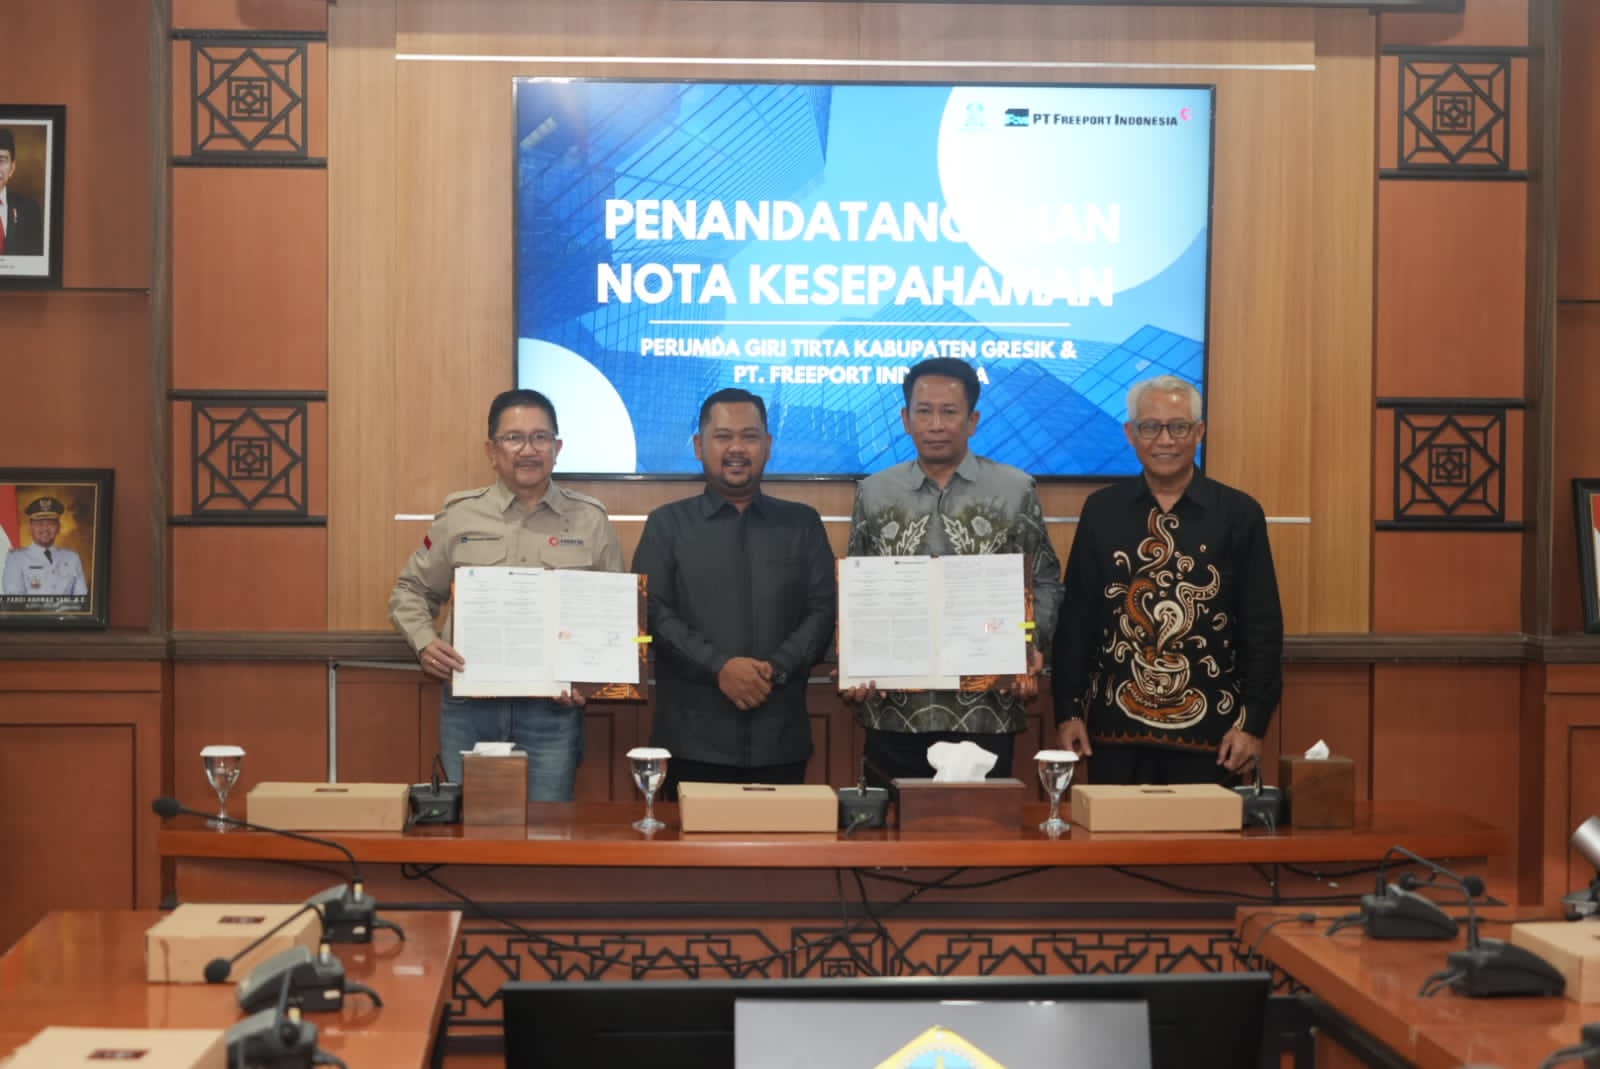 PTFI and Perumda signed MOU